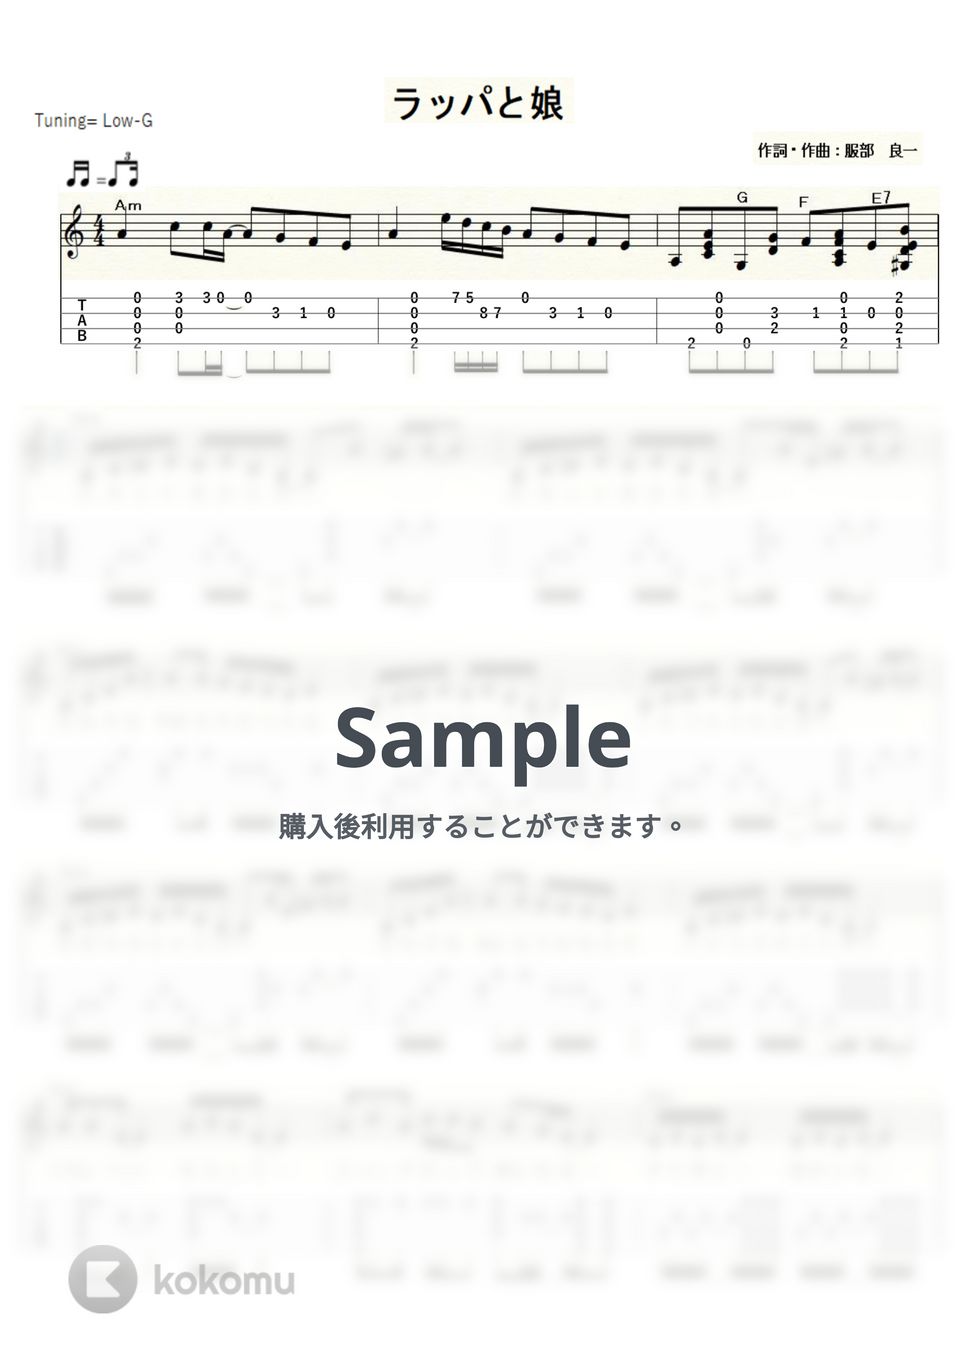 笠置シヅ子 - ラッパと娘 (ｳｸﾚﾚｿﾛ/Low-G/中級) by ukulelepapa